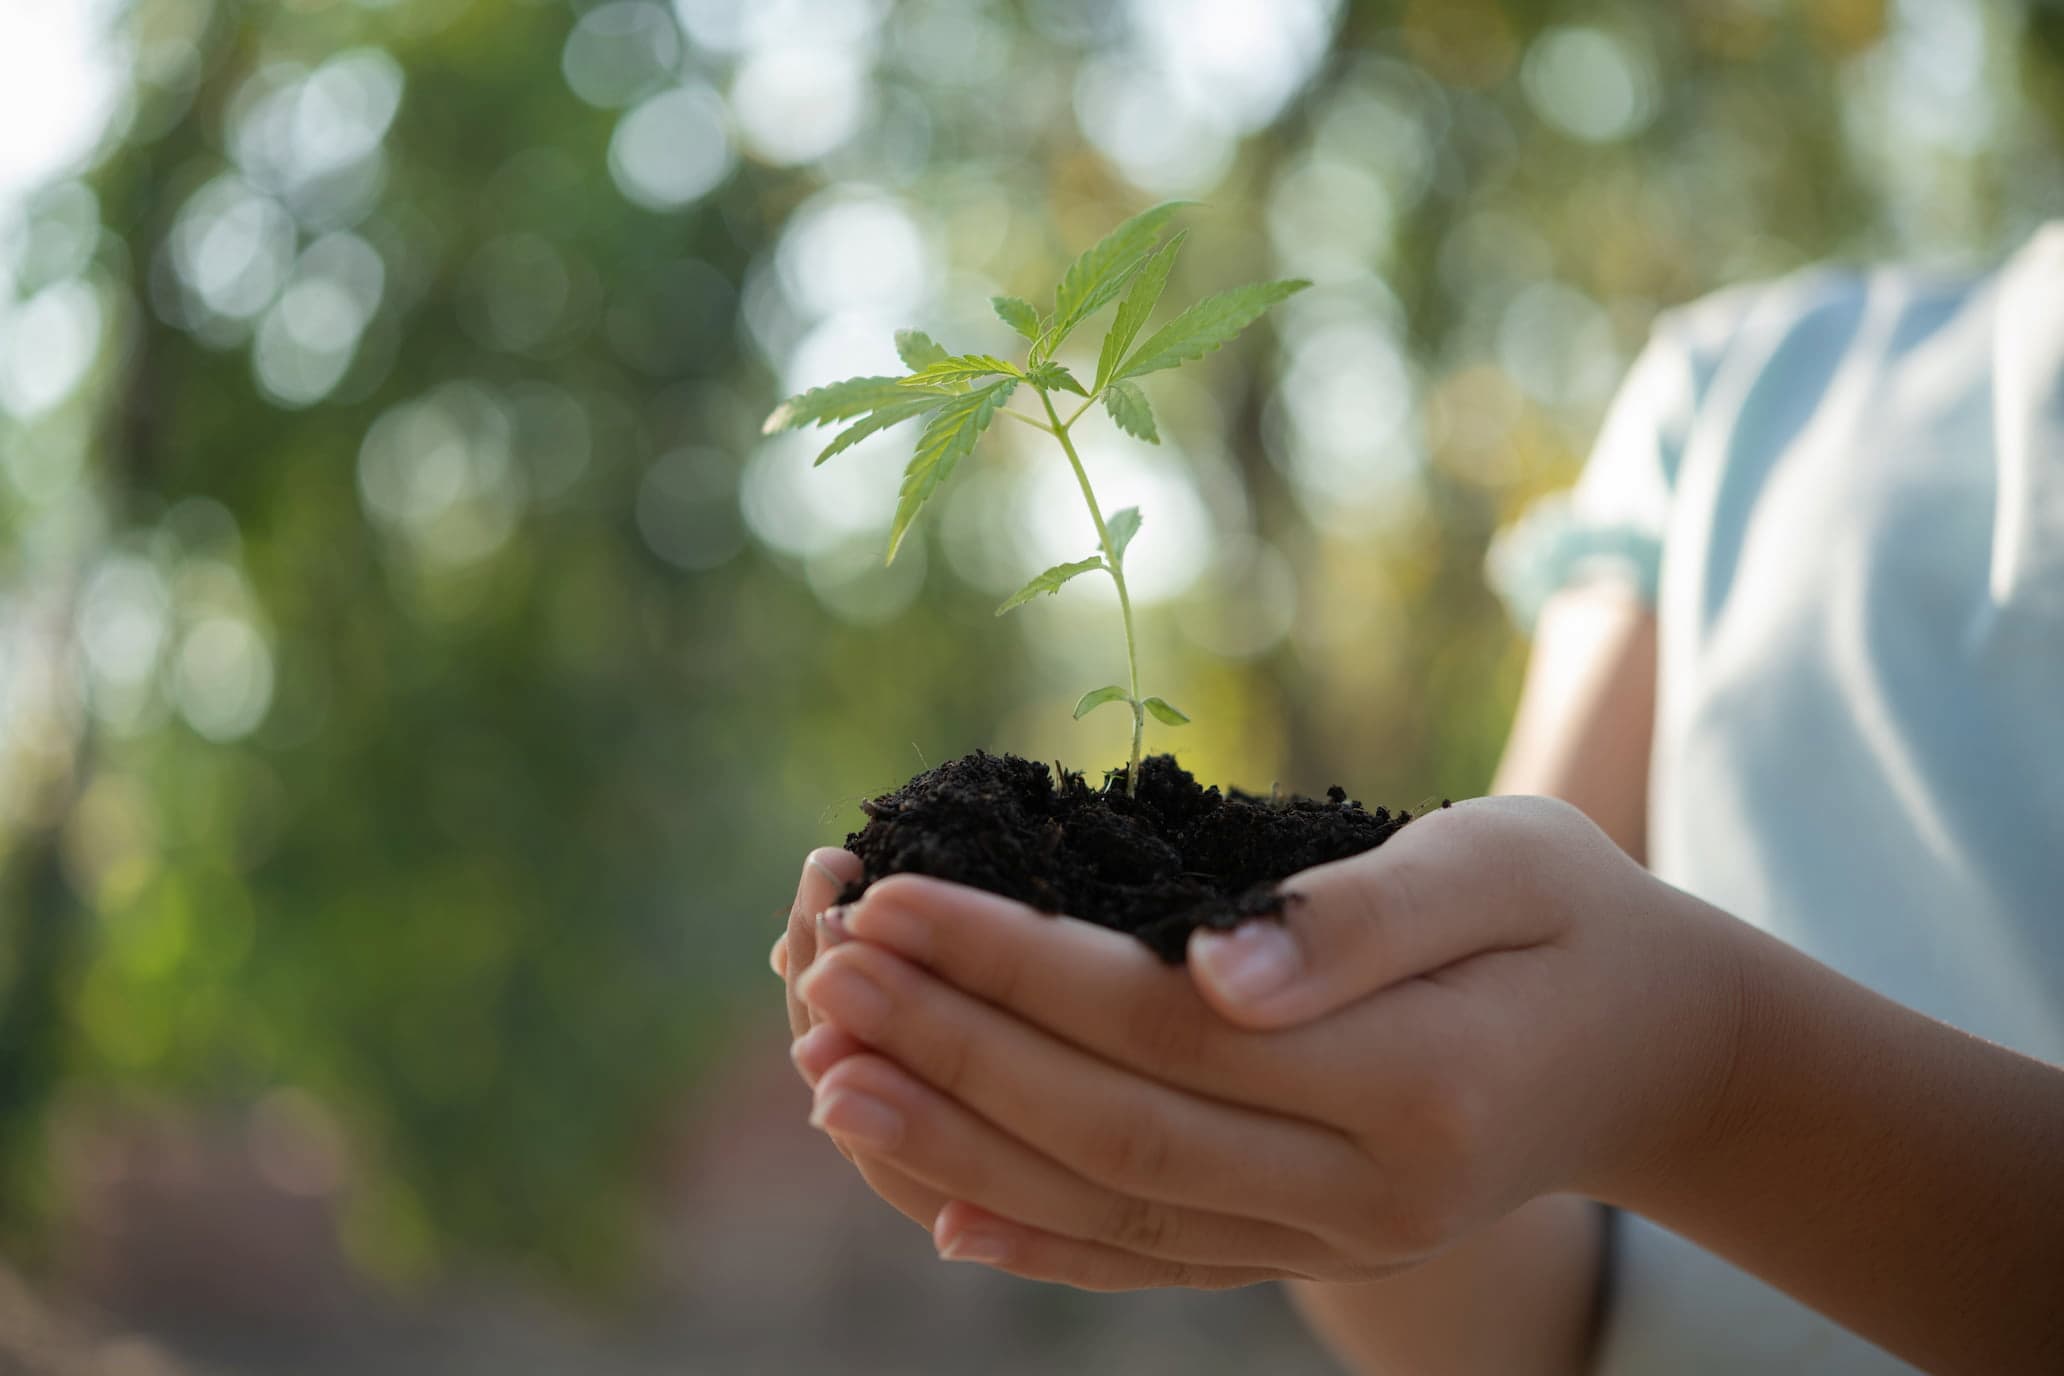 Growing Your Own Hemp: An Aspiring Green Thumb's Guide